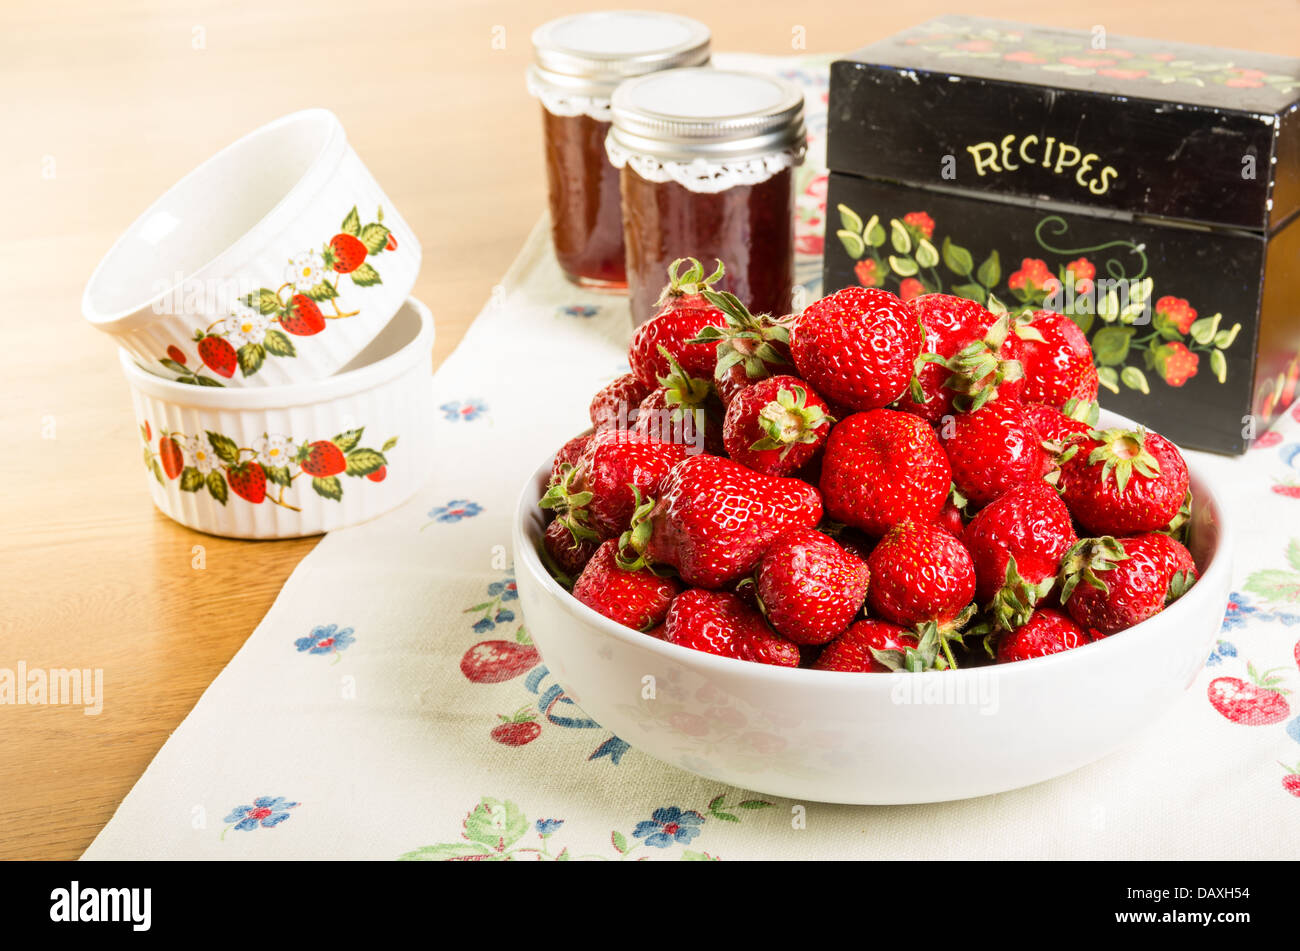 Bol de fraises fraîches avec de la confiture et une boîte à recettes Banque D'Images